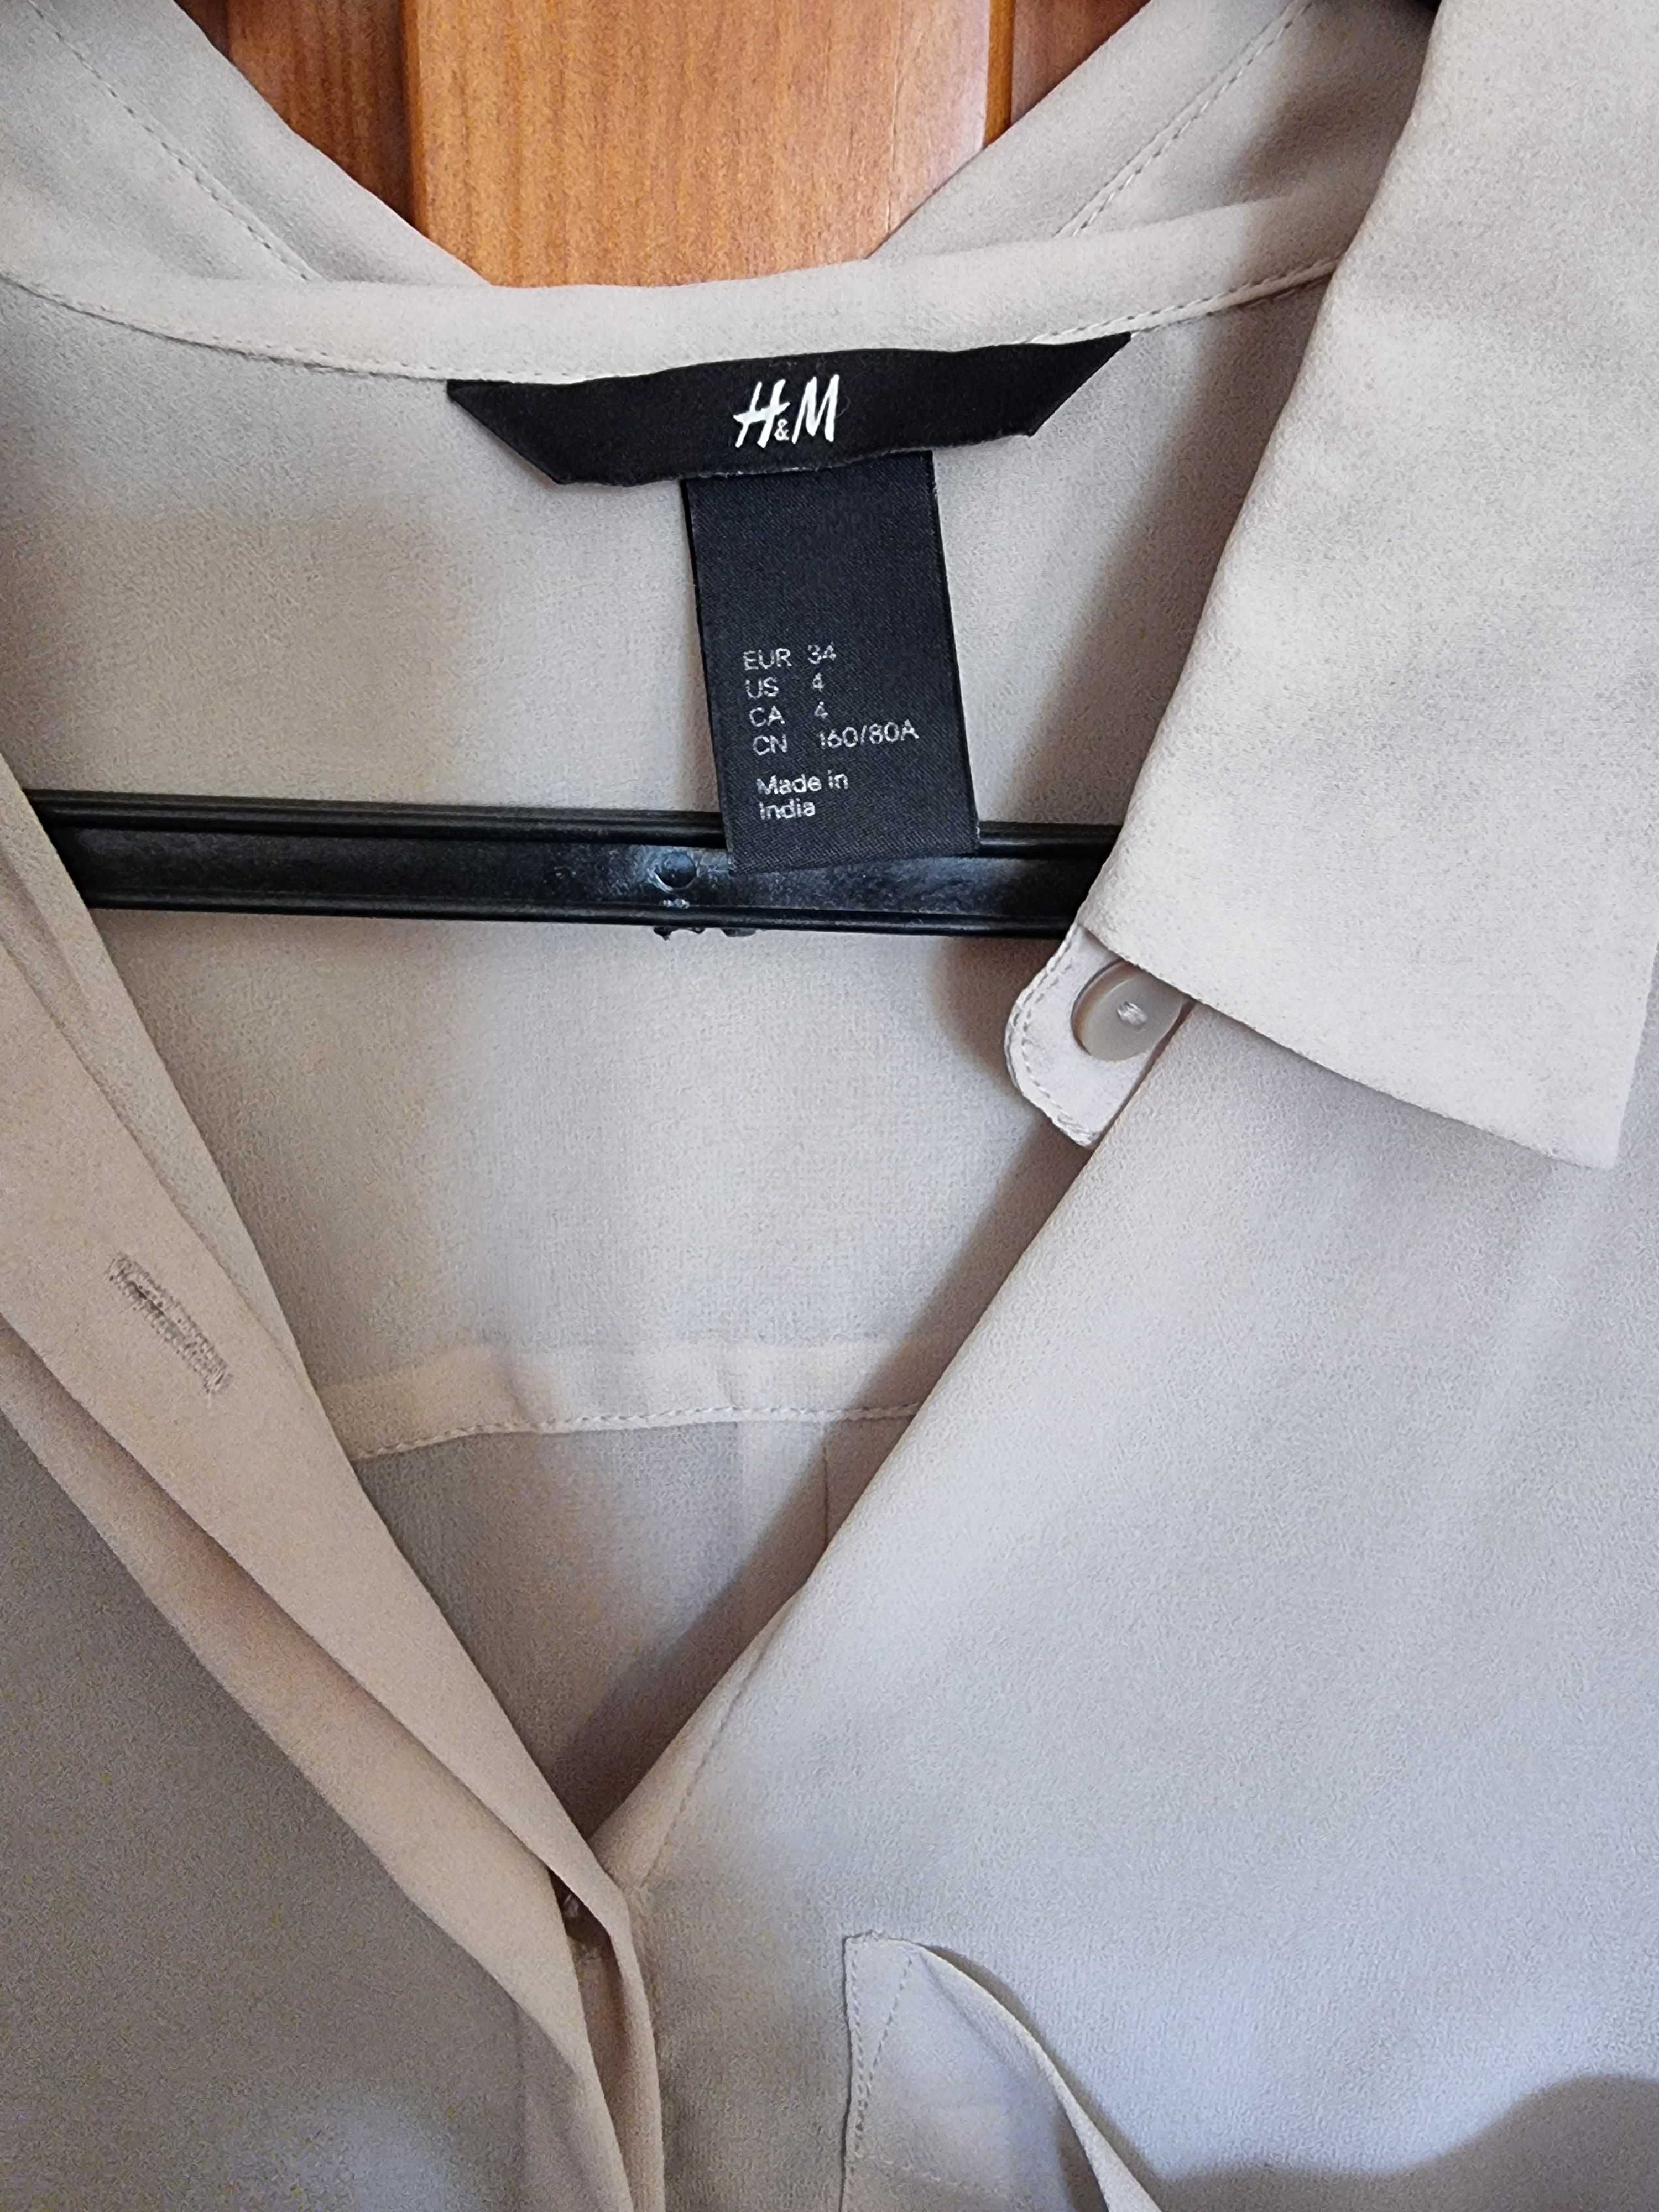 Camisa bege/acastanhada com transparência H&M, tamanho 34